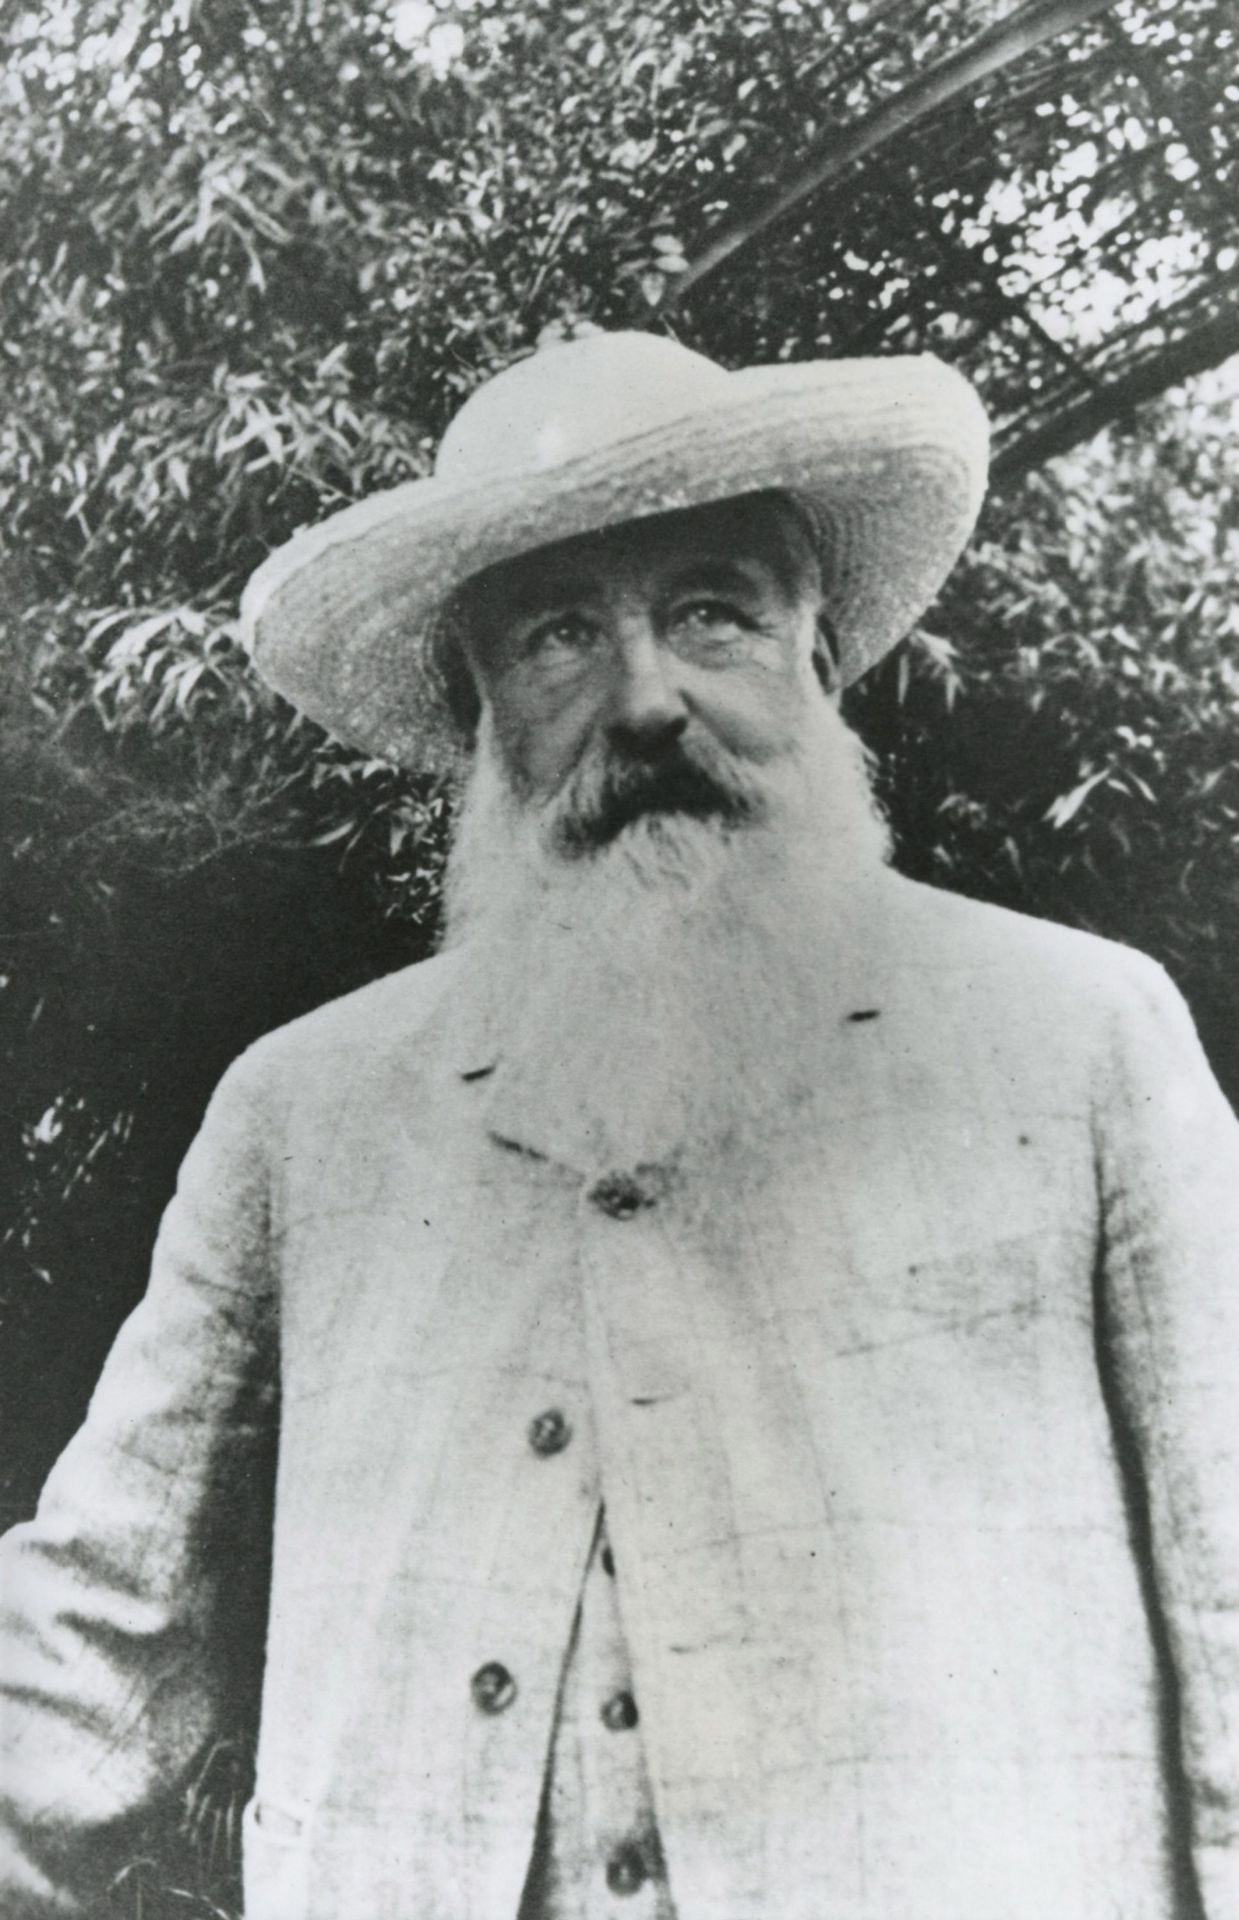 Un portrait photographique de Claude Monet pris par Sacha Guitry